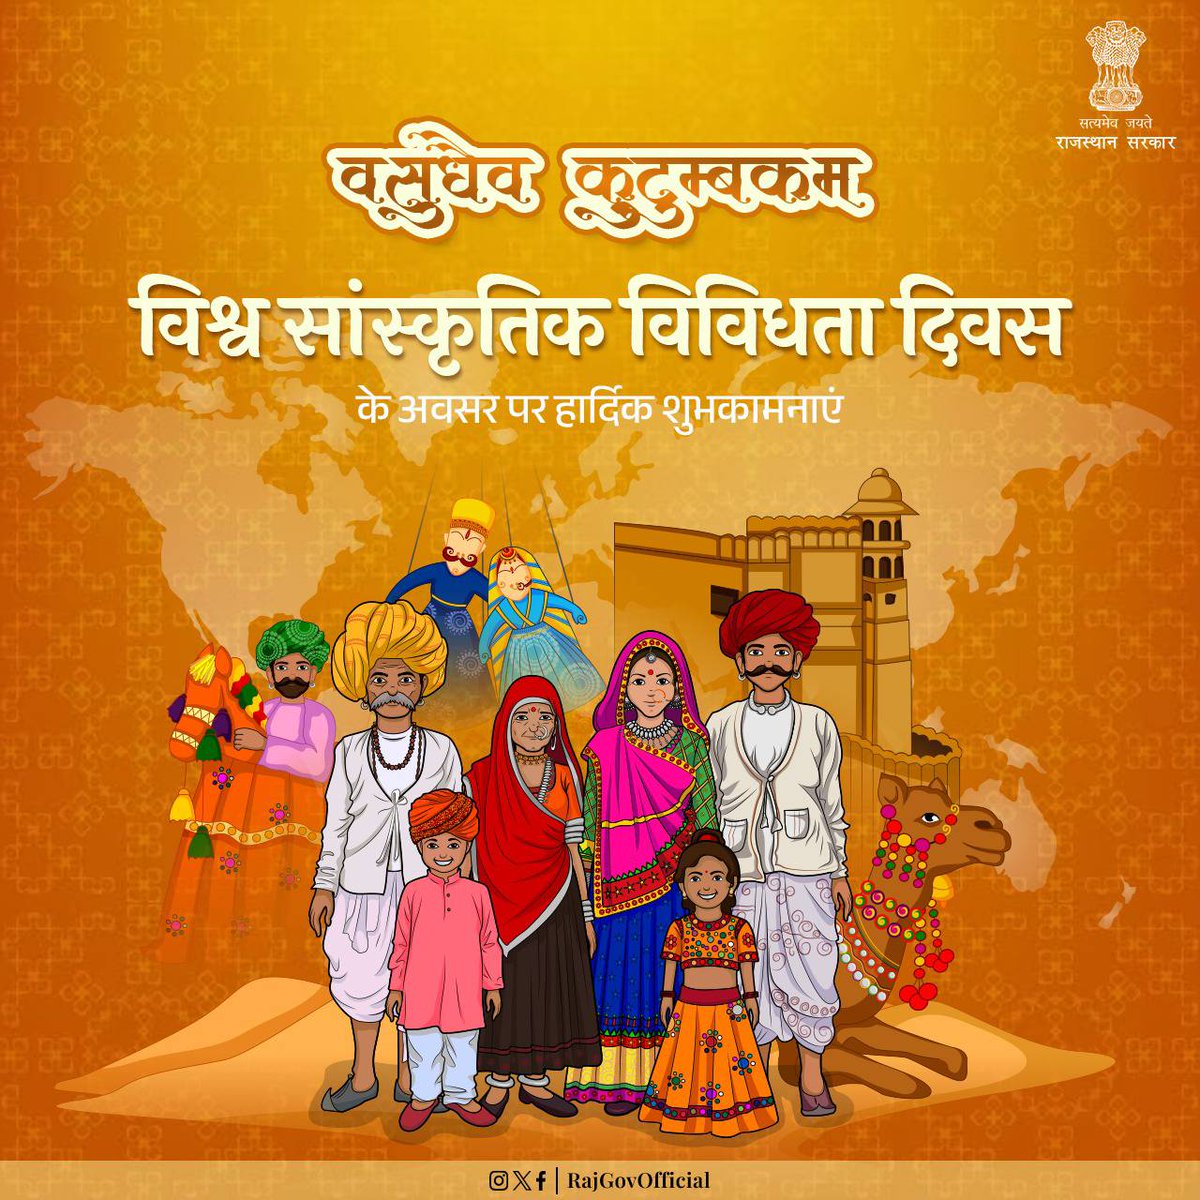 विश्व सांस्कृतिक विविधता दिवस के अवसर पर हार्दिक शुभकामनाएं। हमें शांति एवं आपसी सौहार्द को बढ़ावा देने के लिए दुनिया की सभी संस्कृतियों का सम्मान करना चाहिए। #GovernmentOfRajasthan #राजस्थान_सरकार